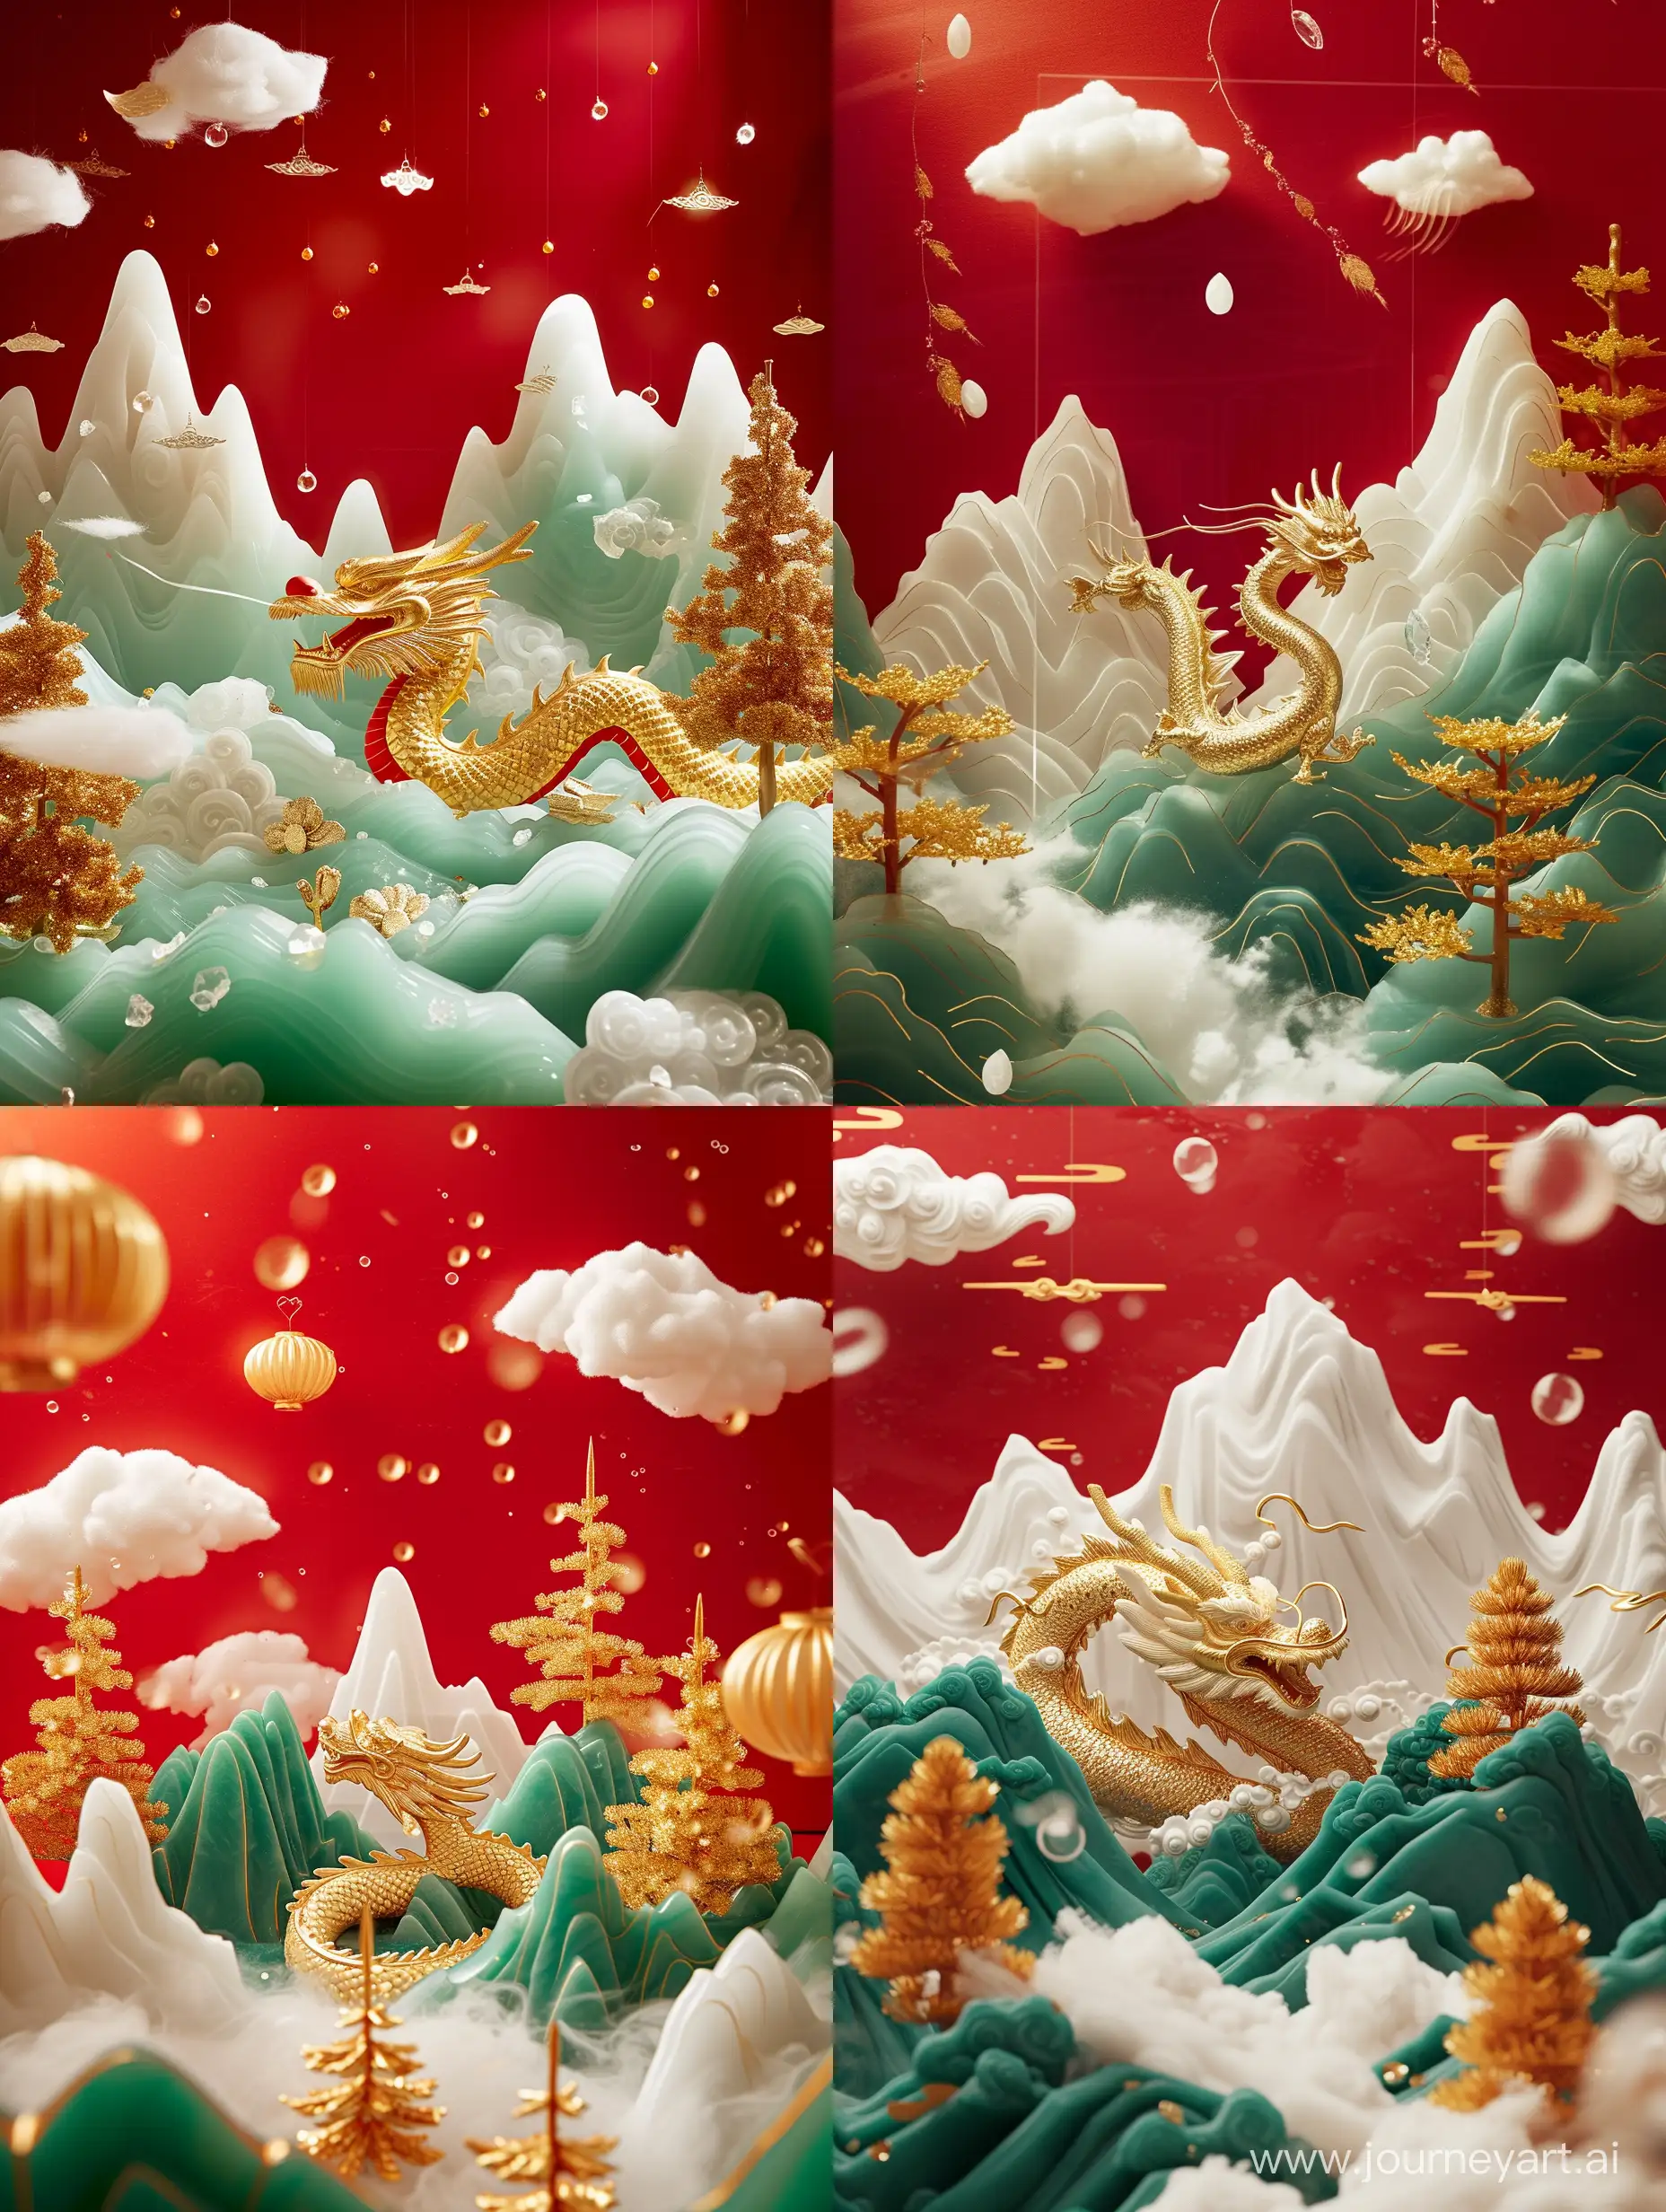 中国新年，吉祥龙主题，龙为中心，金玉雕刻超广角拍摄，线条柔和，线条流畅中国山水画，白玉山翠绿玉山，金树，浮云，红色背景，顶光，明亮，水晶玻璃质感， 极简主义